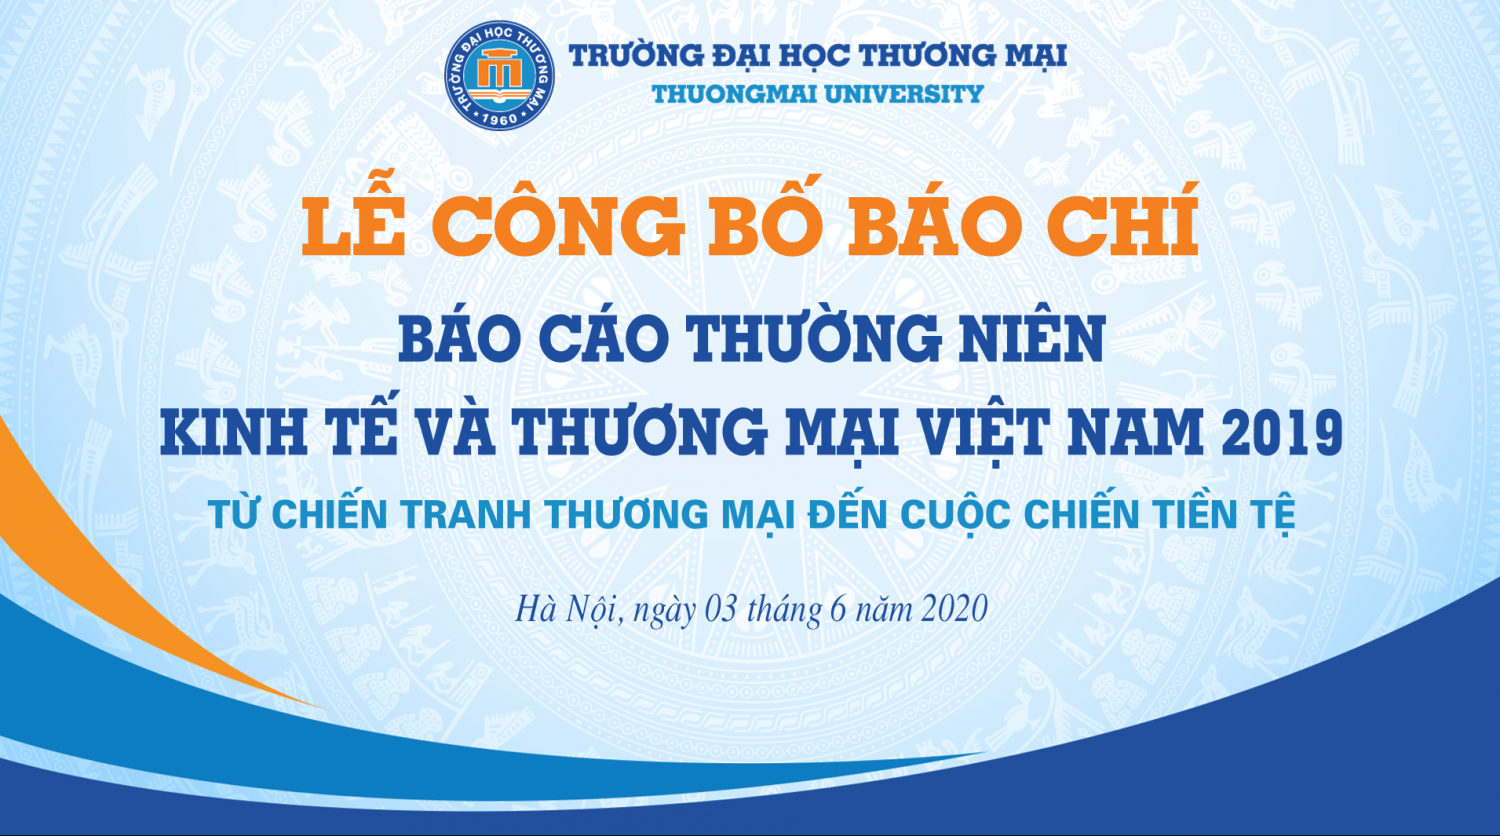 Lễ công bố báo chí Báo cáo thường niên Kinh tế và Thương mại Việt Nam 2019: “Từ chiến tranh Thương mại đến cuộc chiến tiền tệ”